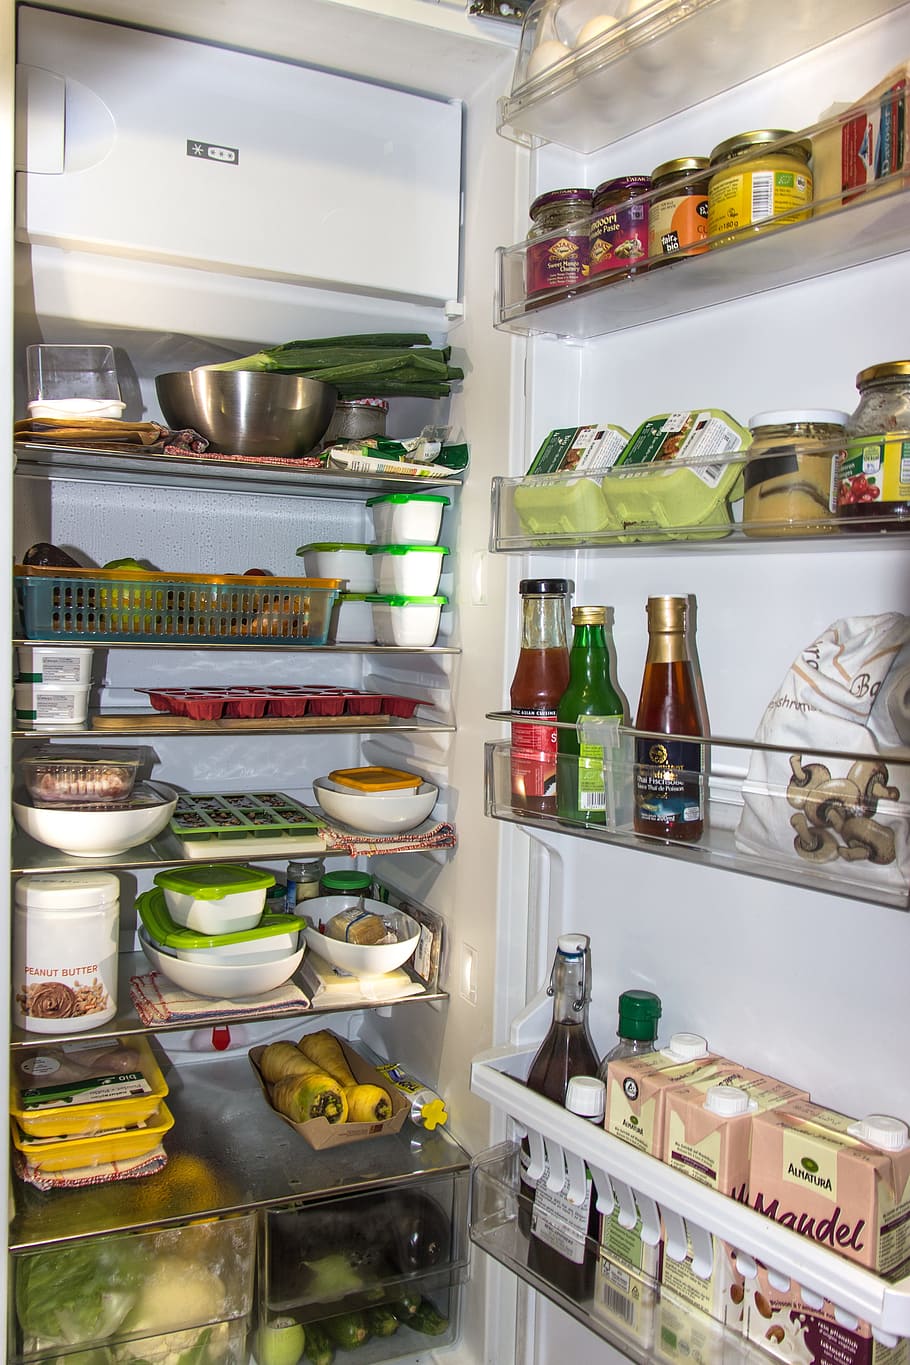 blanco refrigerador de una puerta, refrigerador, nevera, alimentos, frío, cocina, verduras, ingredientes, huevo, hornear